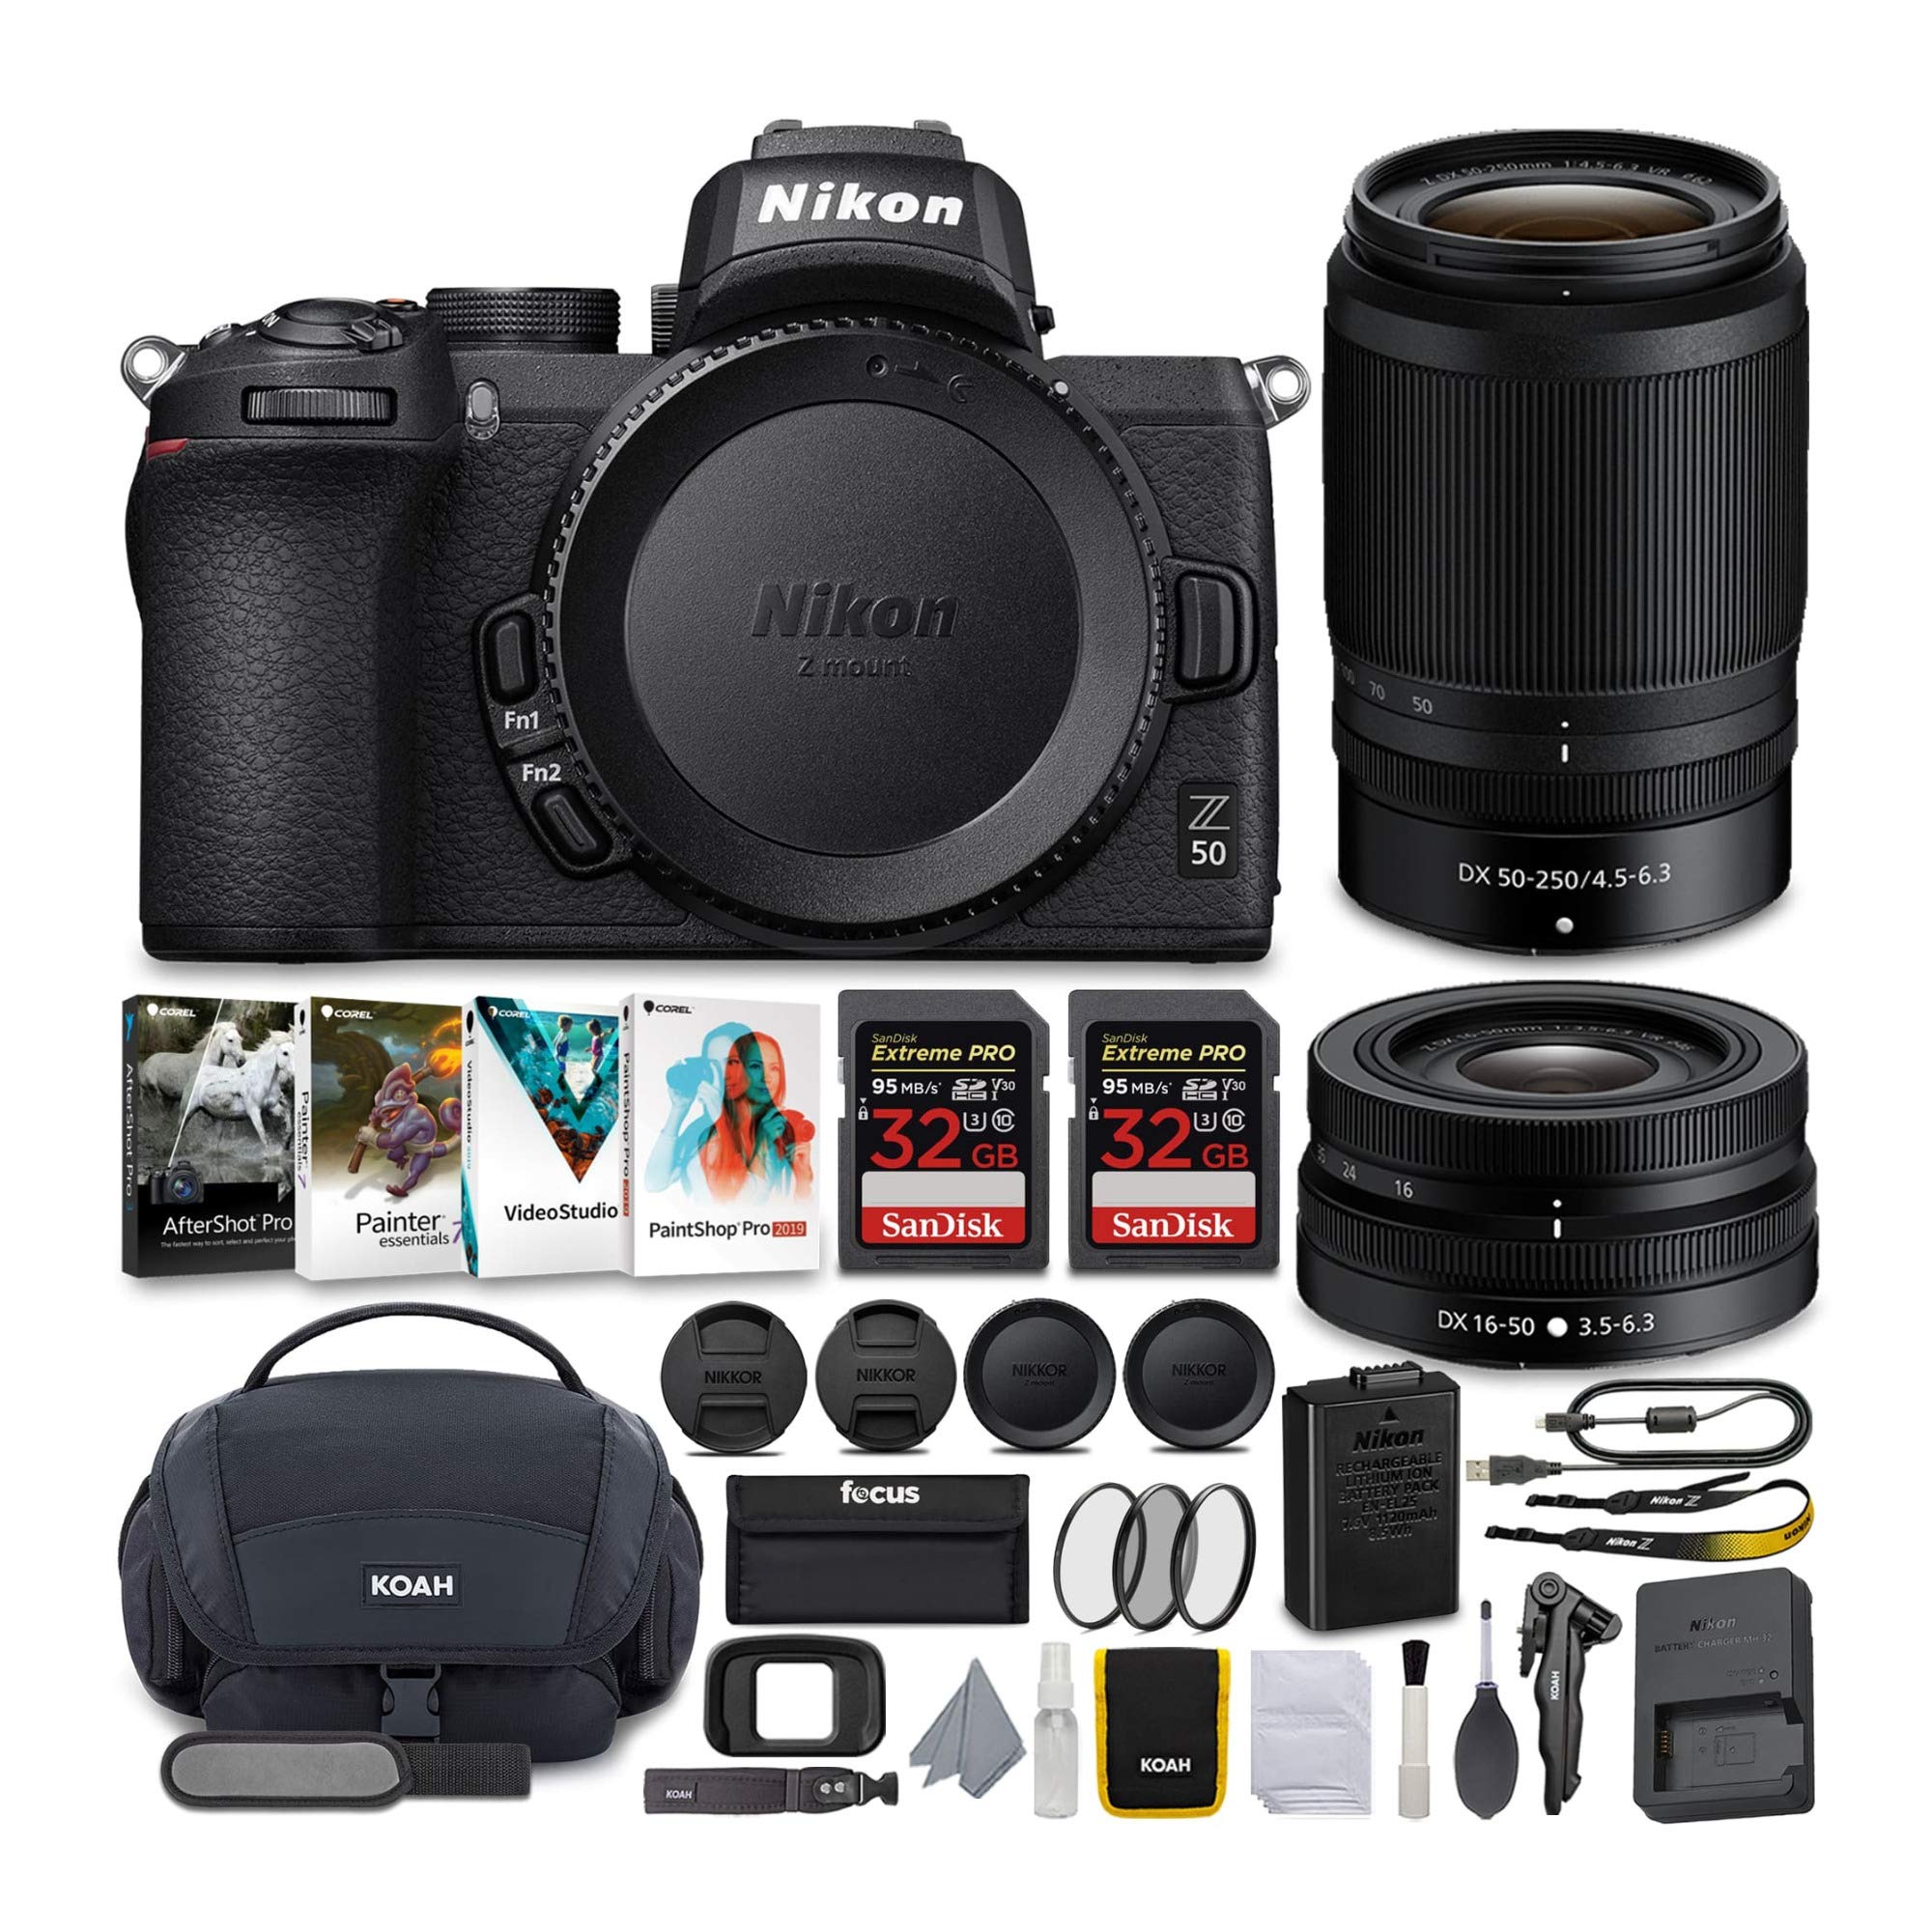  Nikon كاميرا Z50 بدون مرآة مع عدسات NIKKOR Z مقاس 16-50 و 50-250 مم VR ومجموعة بطاقات 64 جيجابايت مع مجموعة ملحقات فاخرة (5 عناصر)...